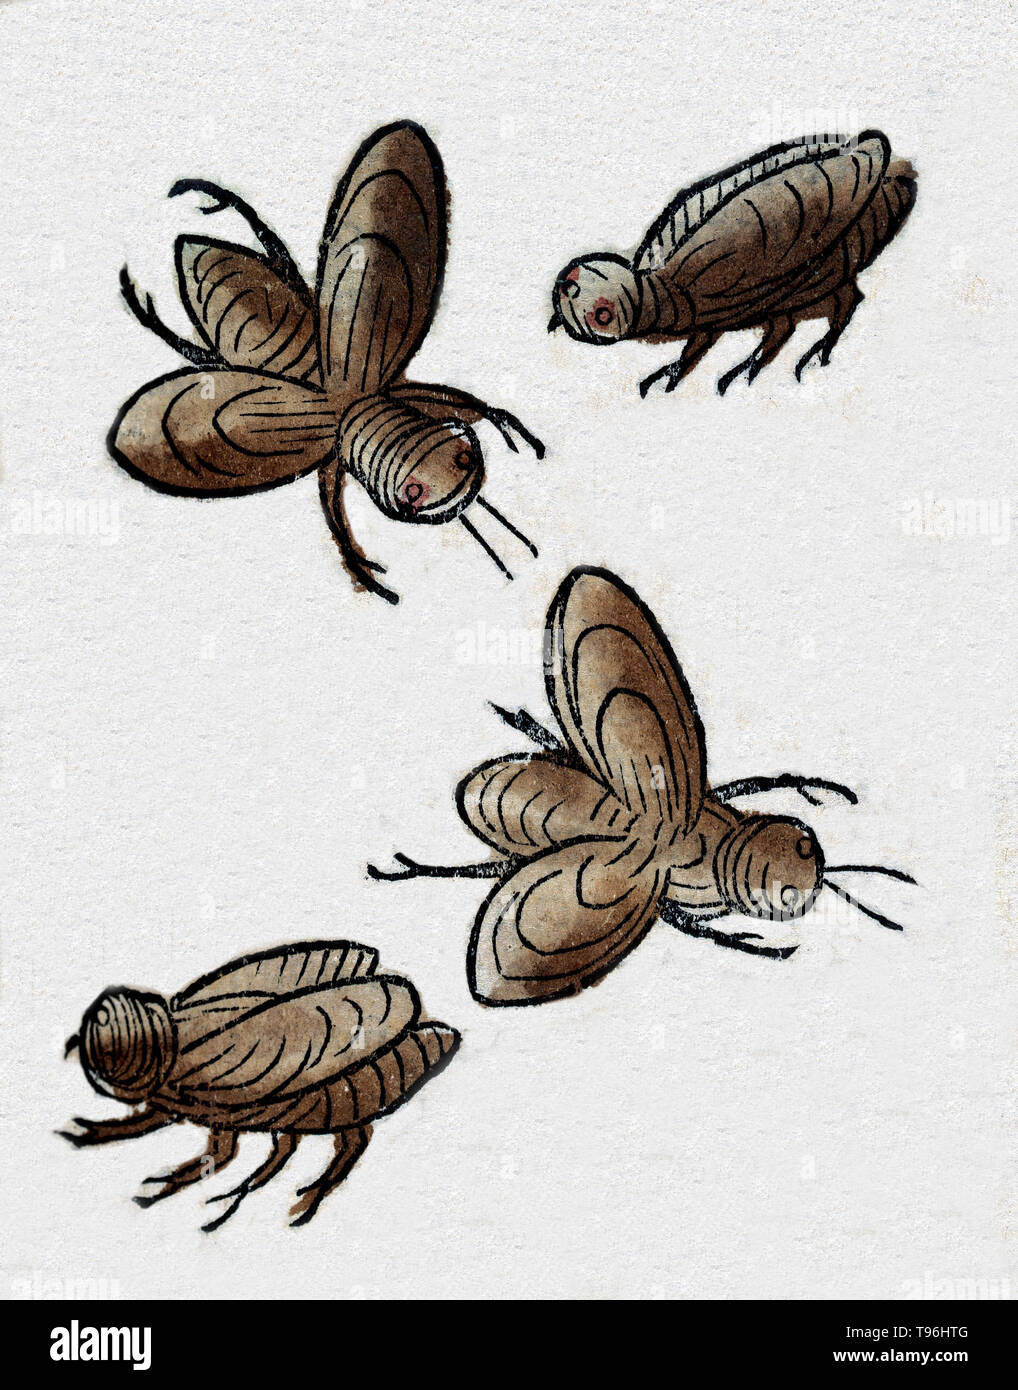 Quatre insectes, peut-être des abeilles. L'Hortus Sanitatis (Jardin de la santé), la première encyclopédie d'histoire naturelle, a été publié par Jacob Meydenbach en Allemagne, 1491. Il décrit des plantes et animaux (à la fois réelle et mythique) avec minéraux et de divers métiers, avec leur valeur thérapeutique et de la méthode de préparation. La gravure sur bois à la main, les illustrations sont stylisées mais souvent facilement reconnaissable. L'édition 1547. Banque D'Images